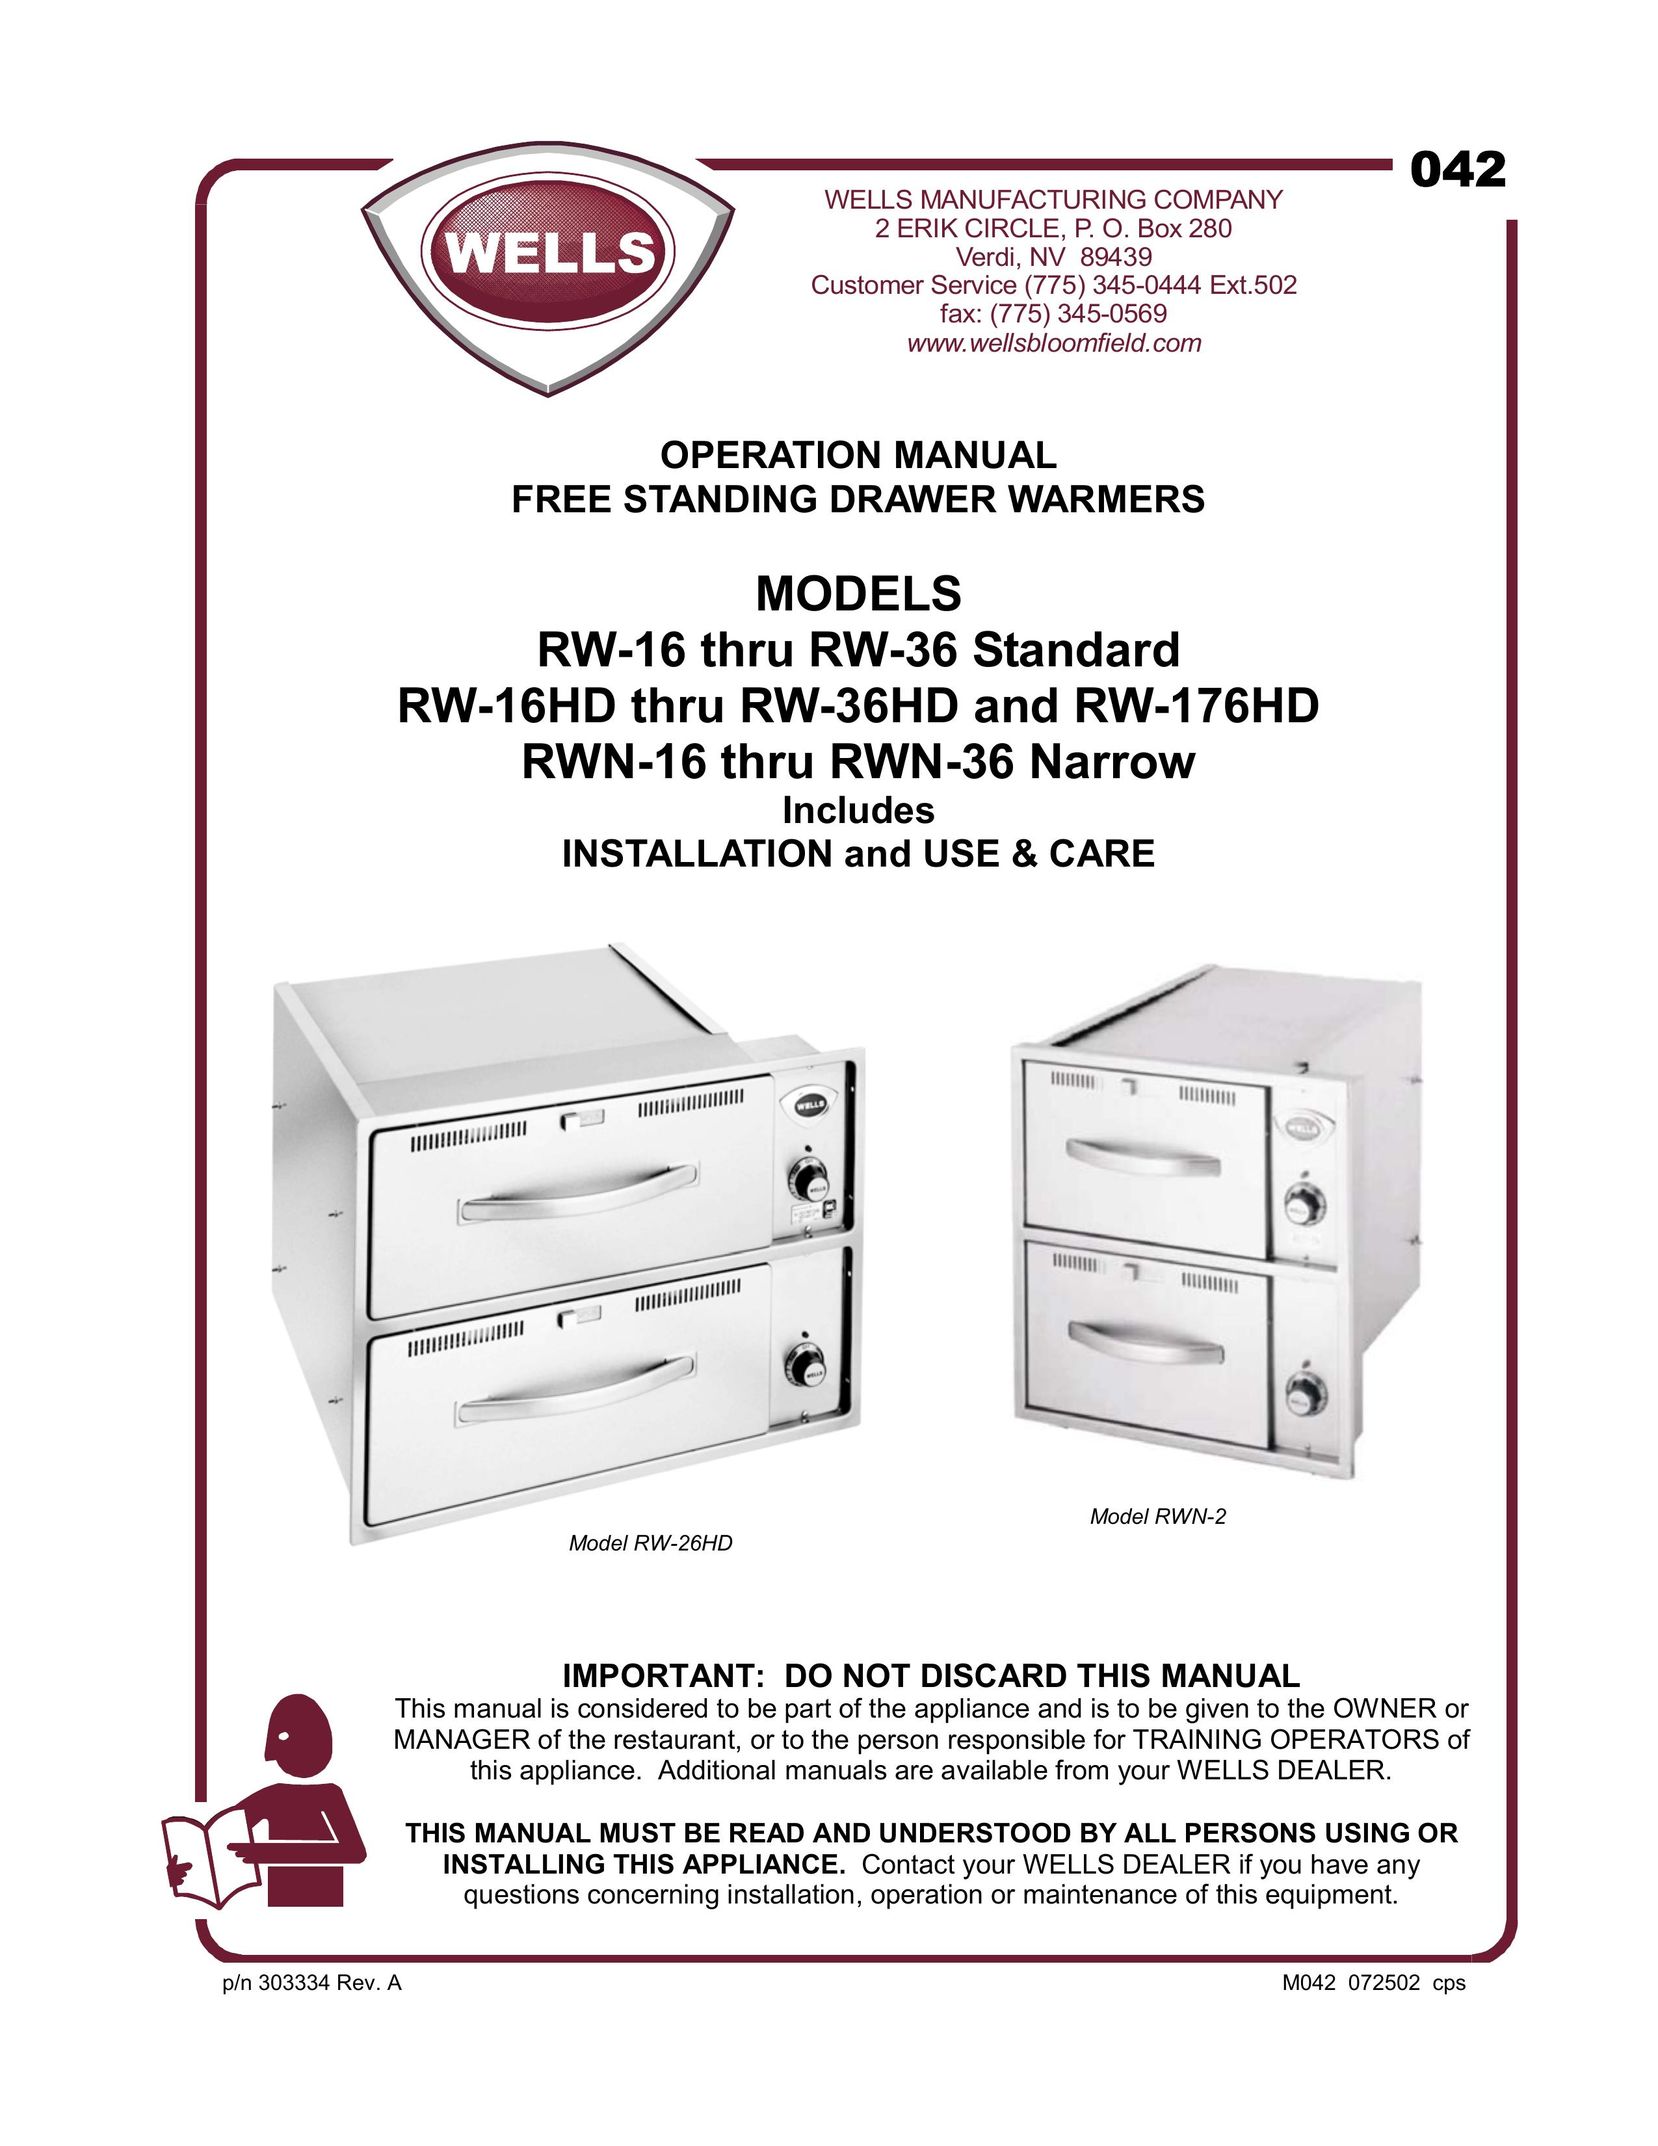 Wells RW-16HD thru RW-36HD Food Warmer User Manual